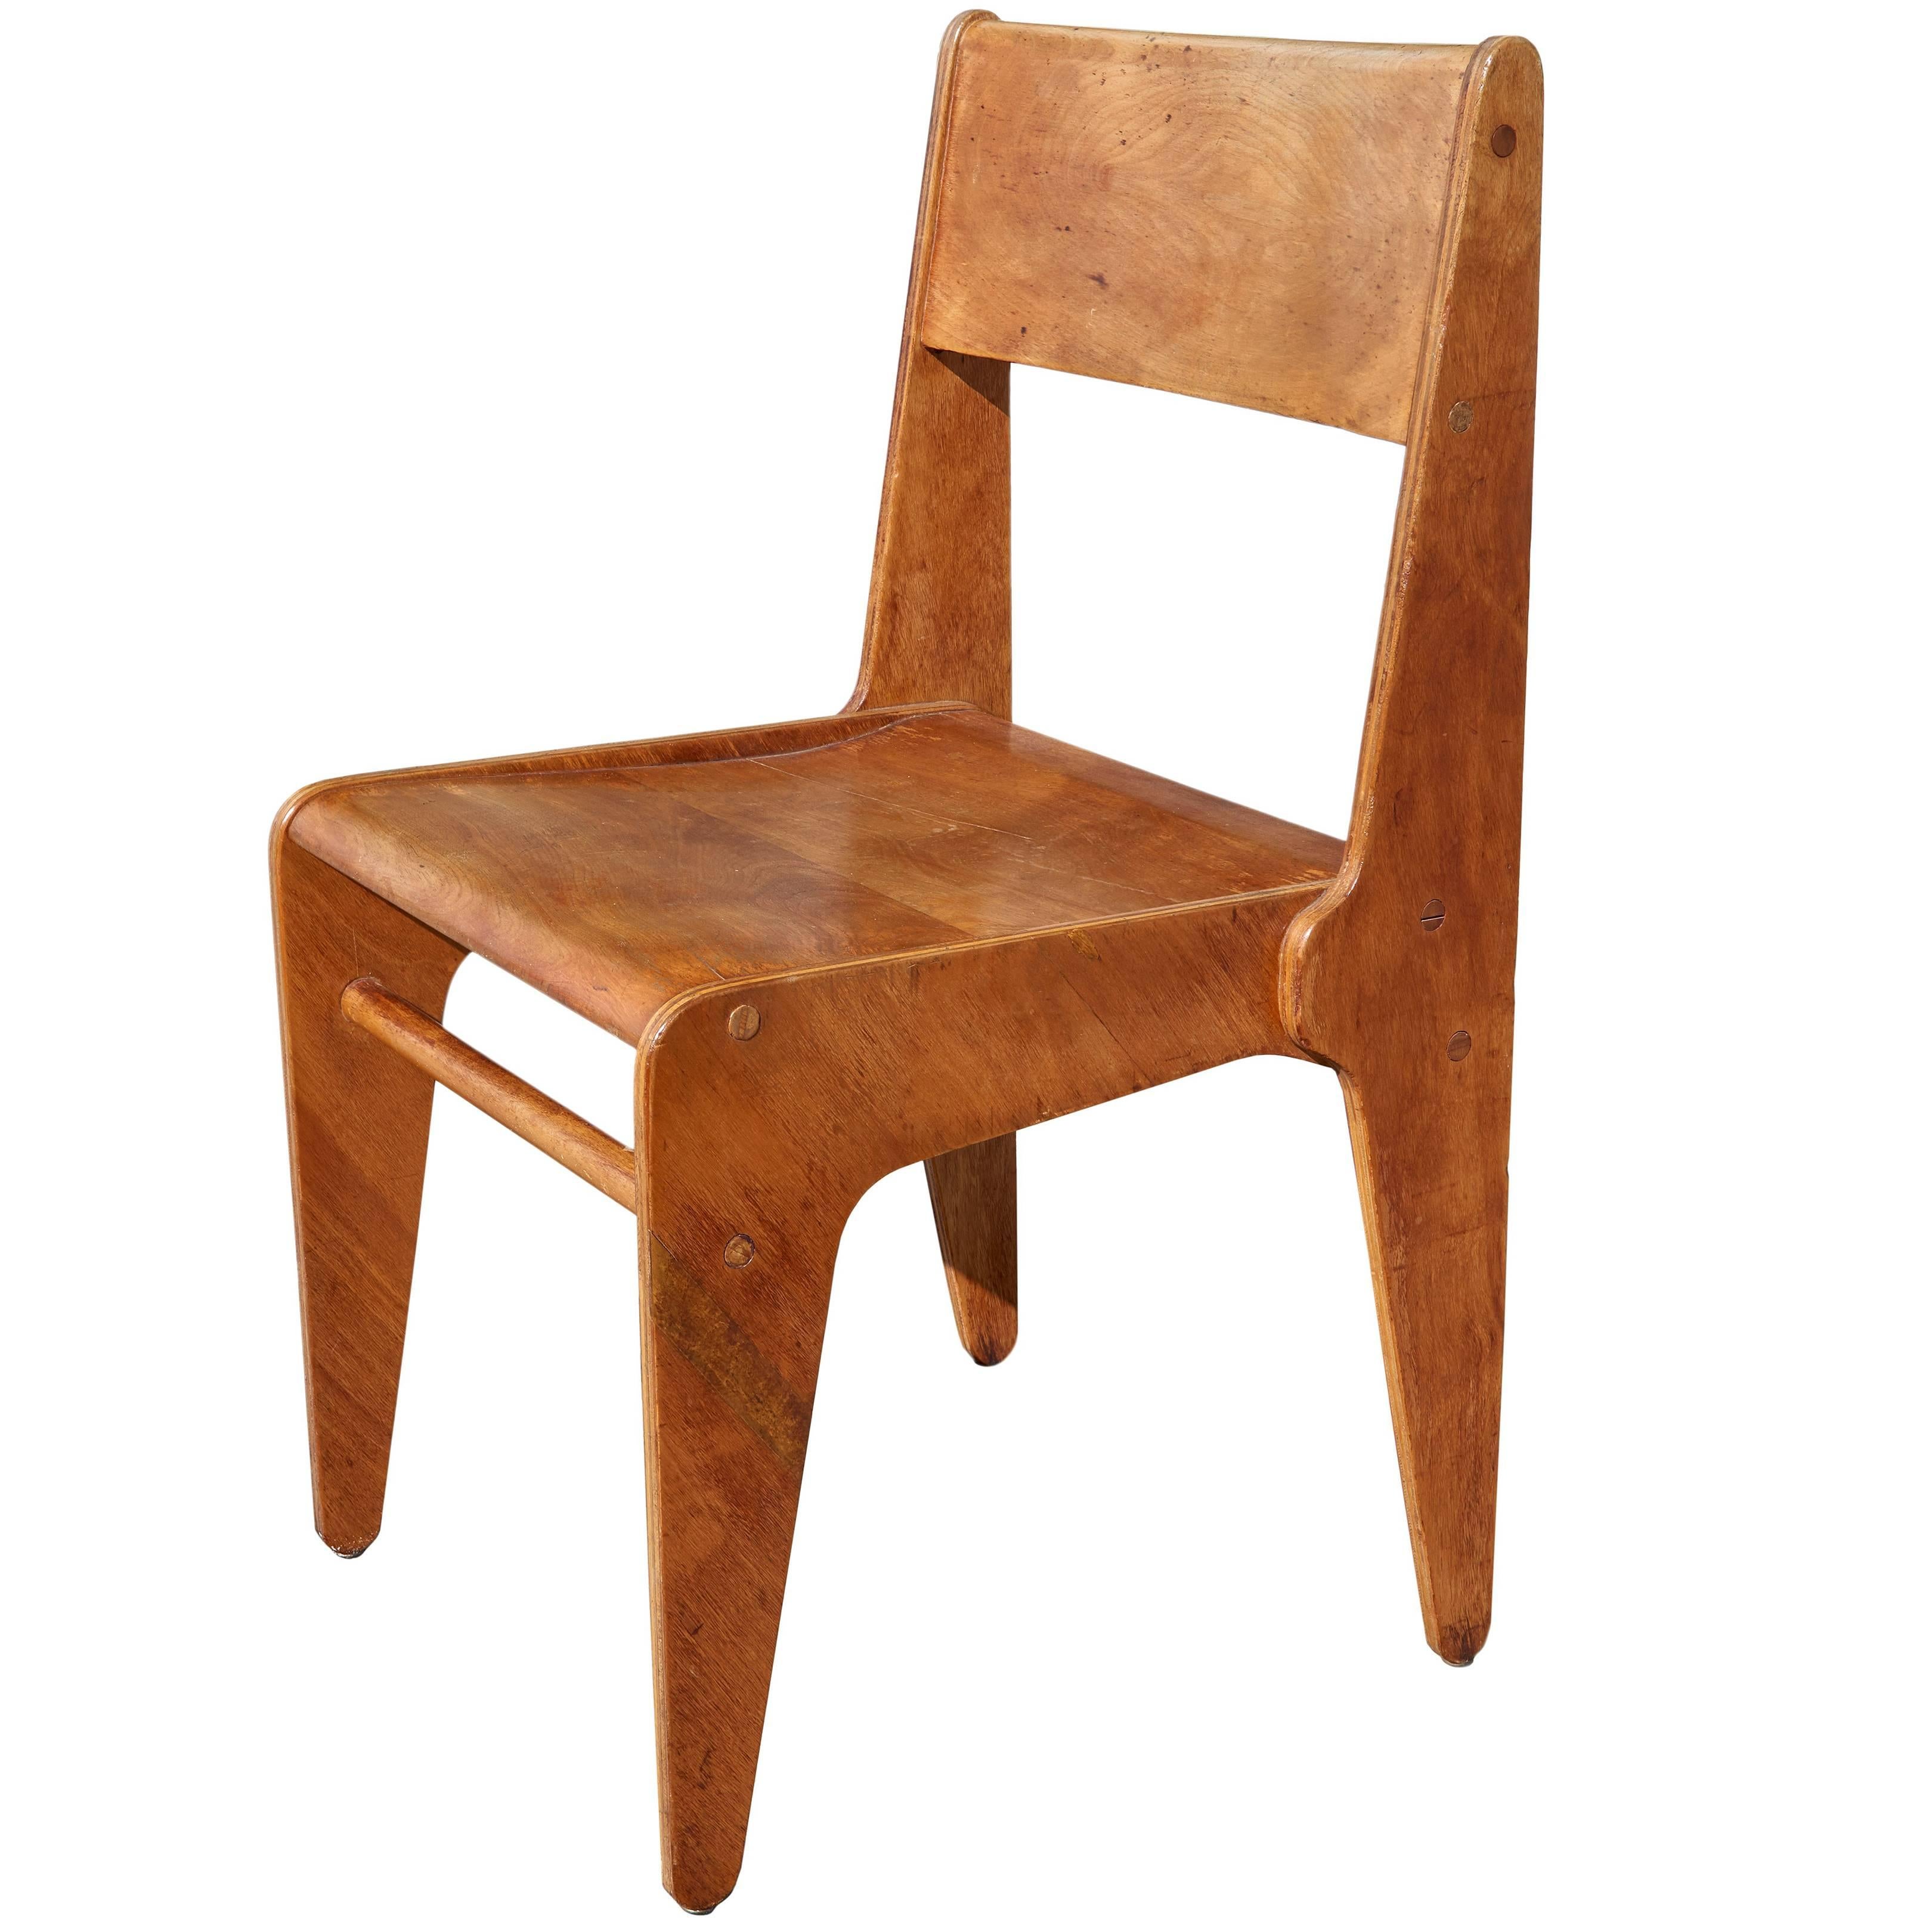 Rare 1938 "Bryn Mawr" Chair by Marcel Breuer